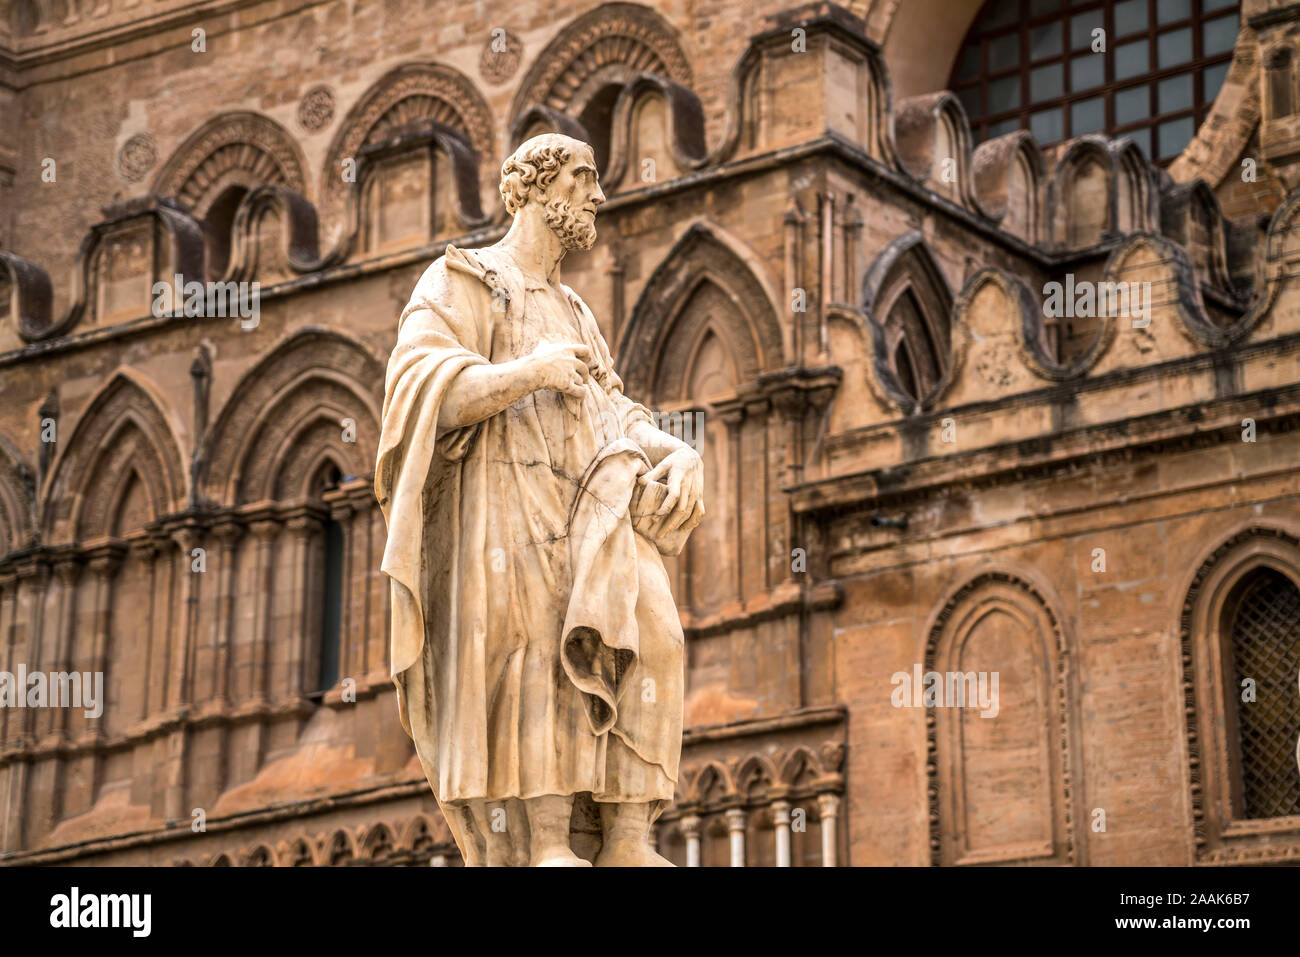 Statue der Kathedrale Maria Santissima Assunta, Palermo, Sizilien, Italien, Europa | Statue vor der Kathedrale Mariä Himmelfahrt von Vi Stockfoto